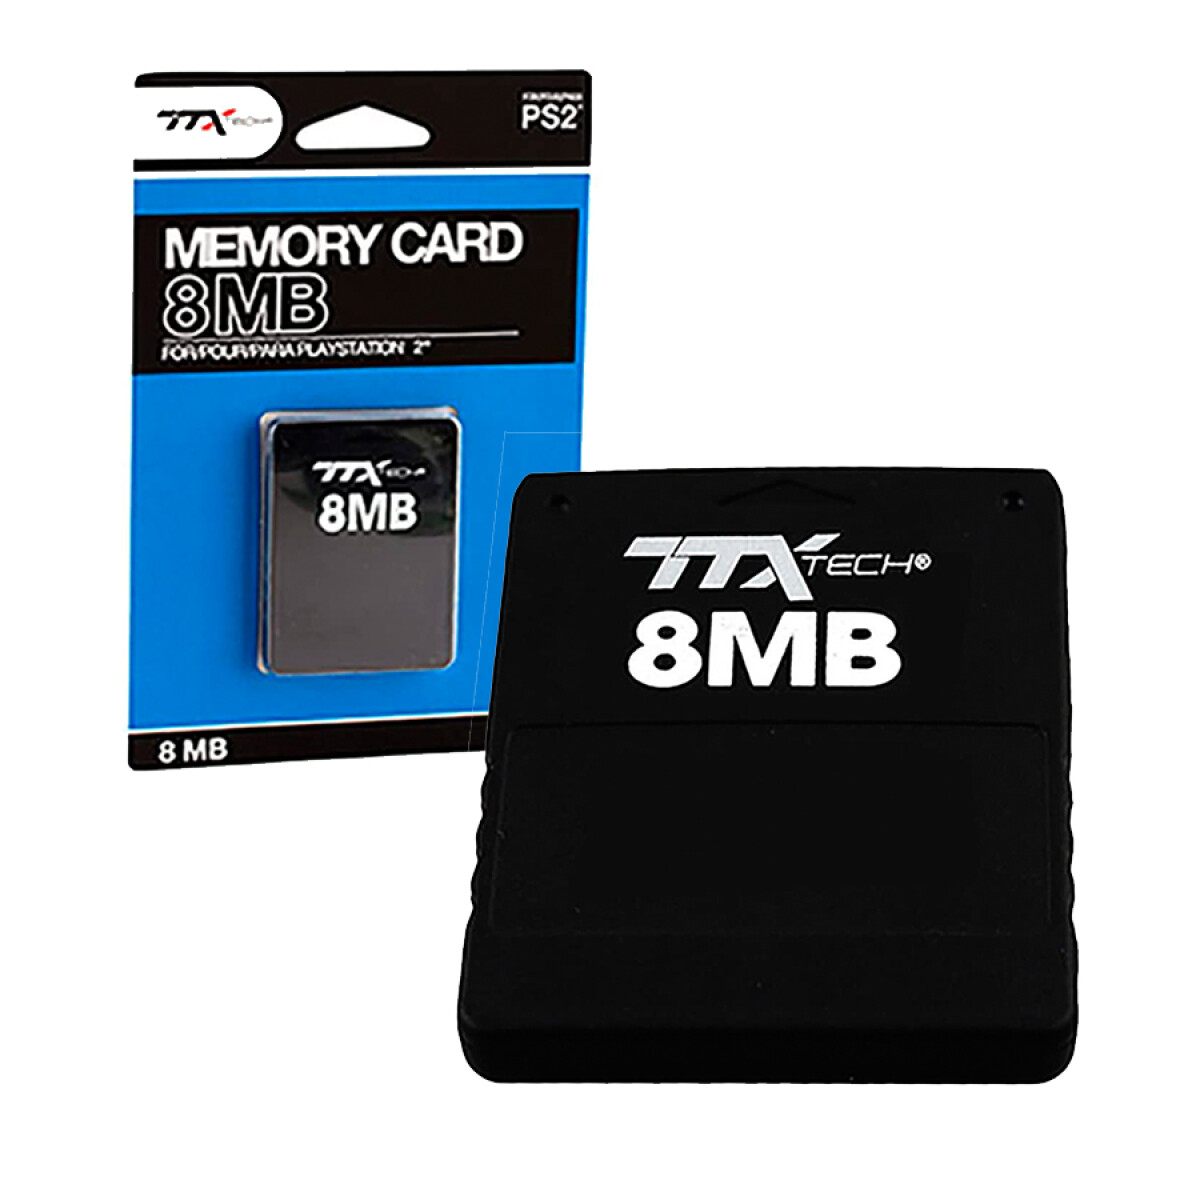 Memory Card 8MB 